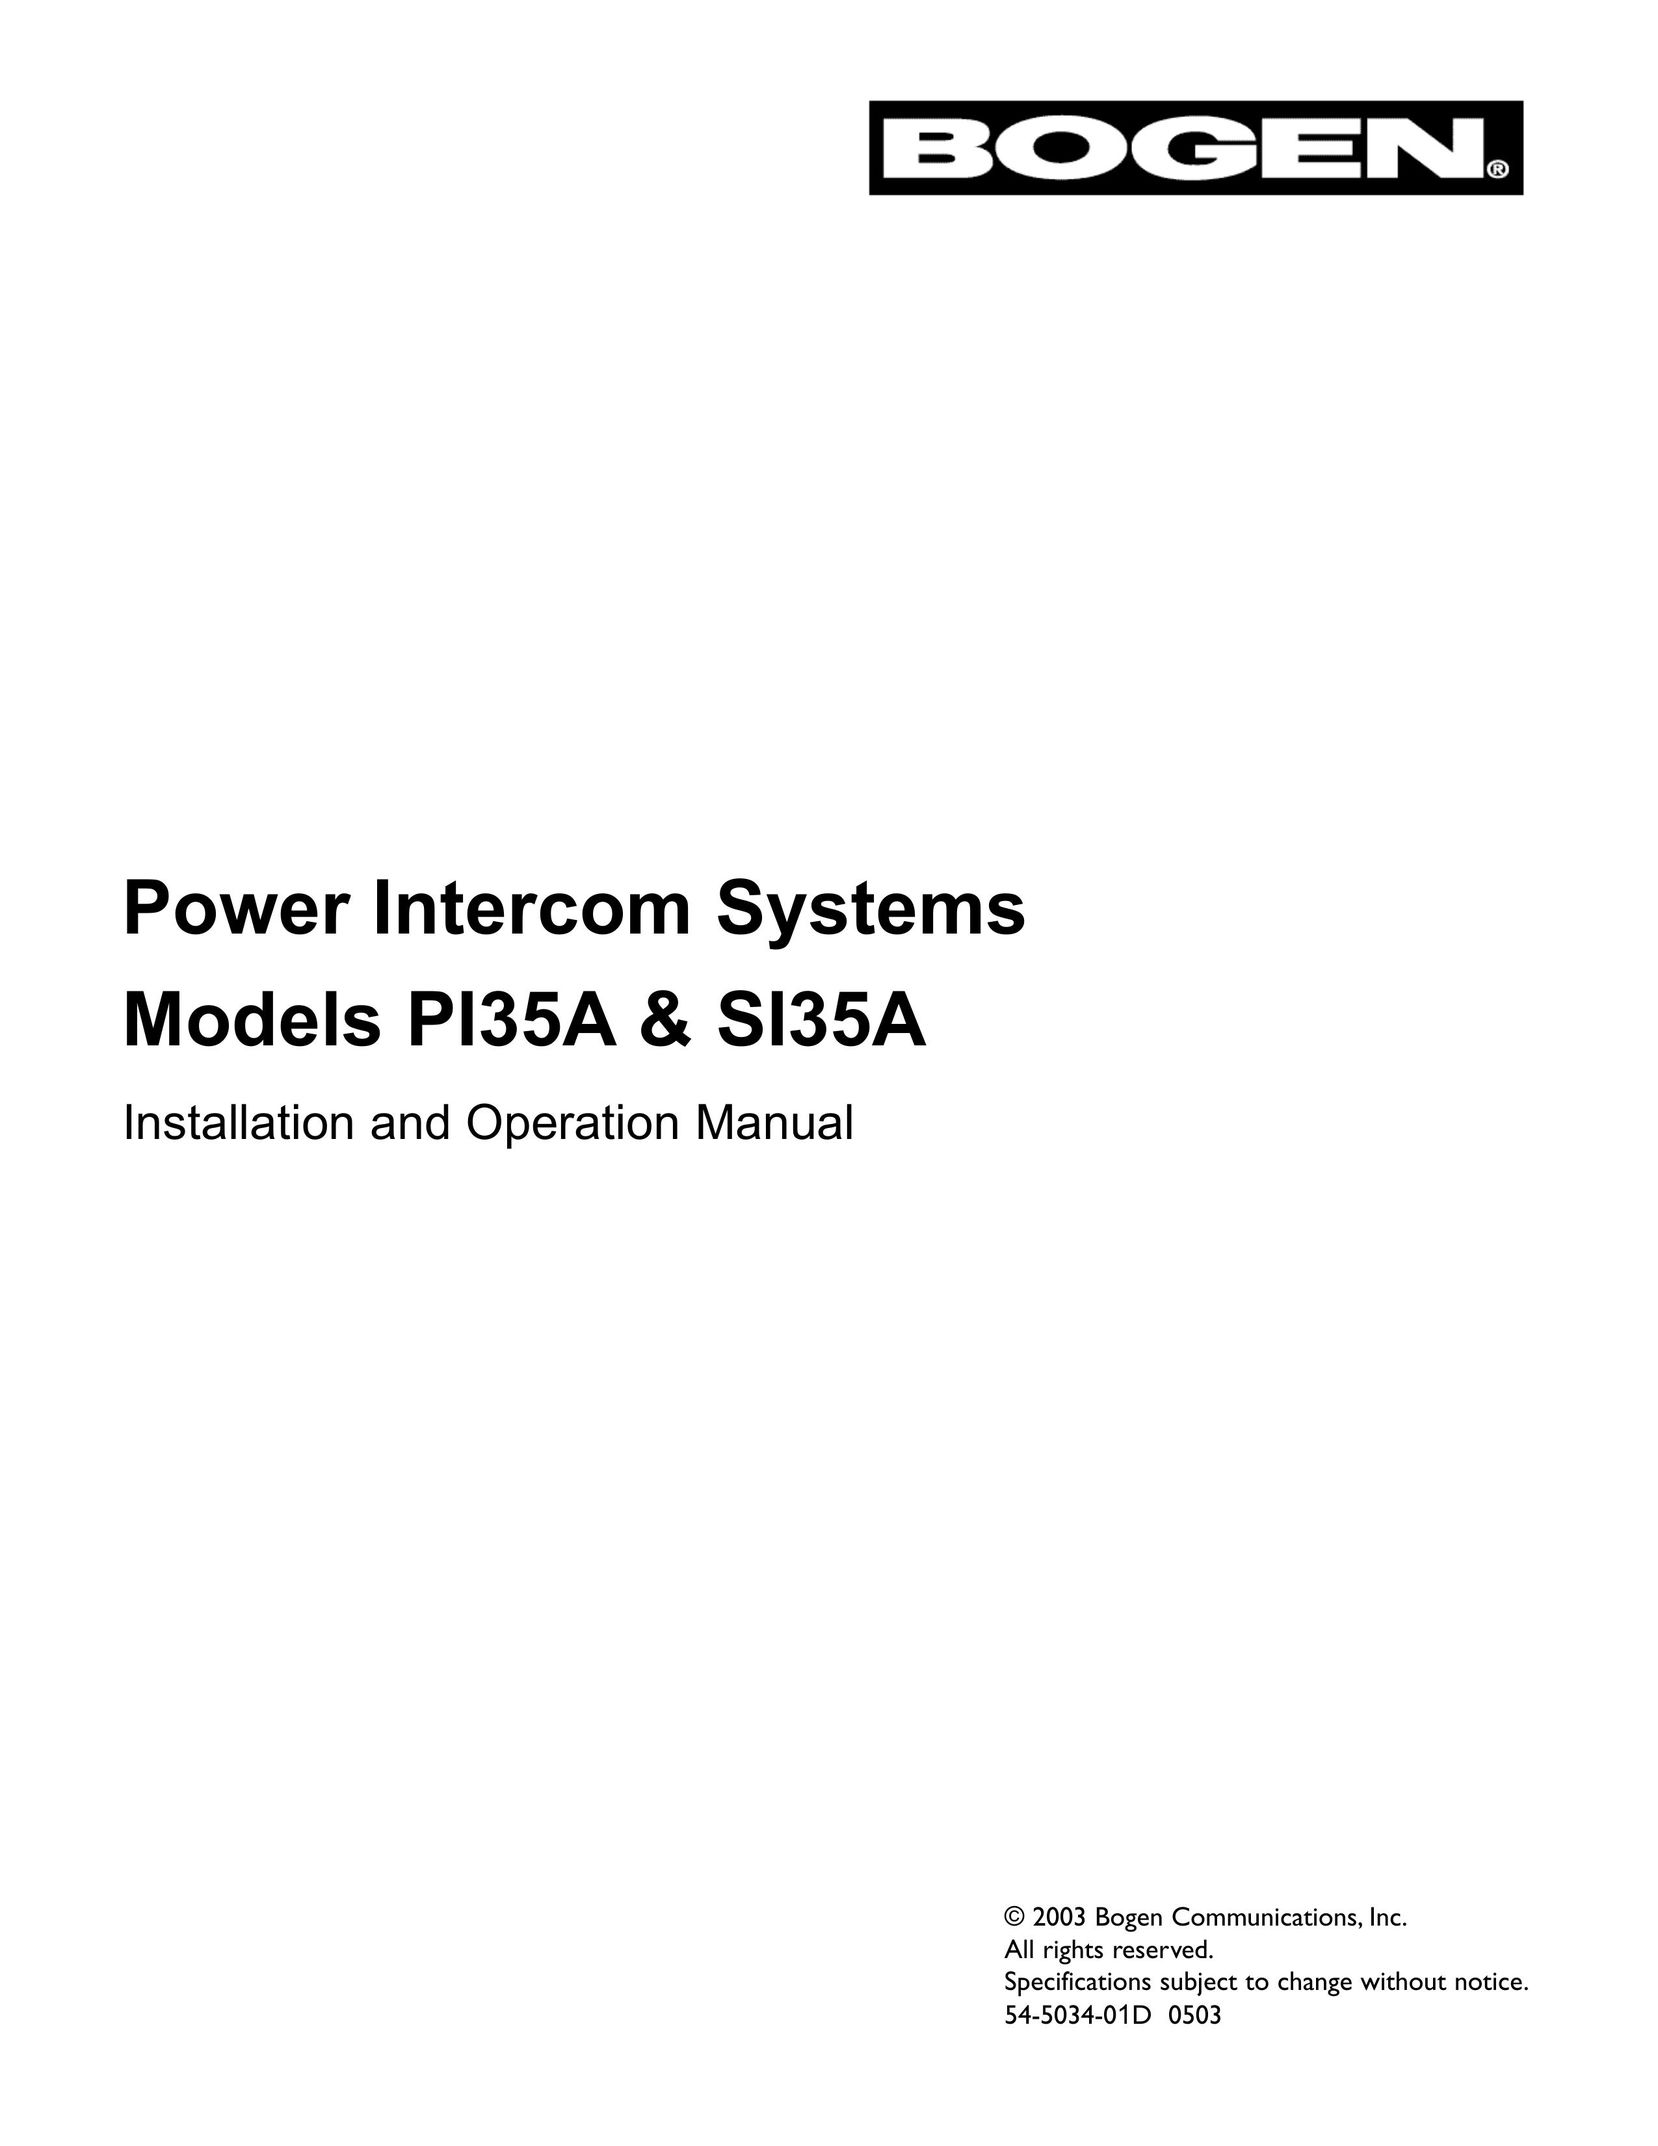 Bogen PI35A Intercom System User Manual